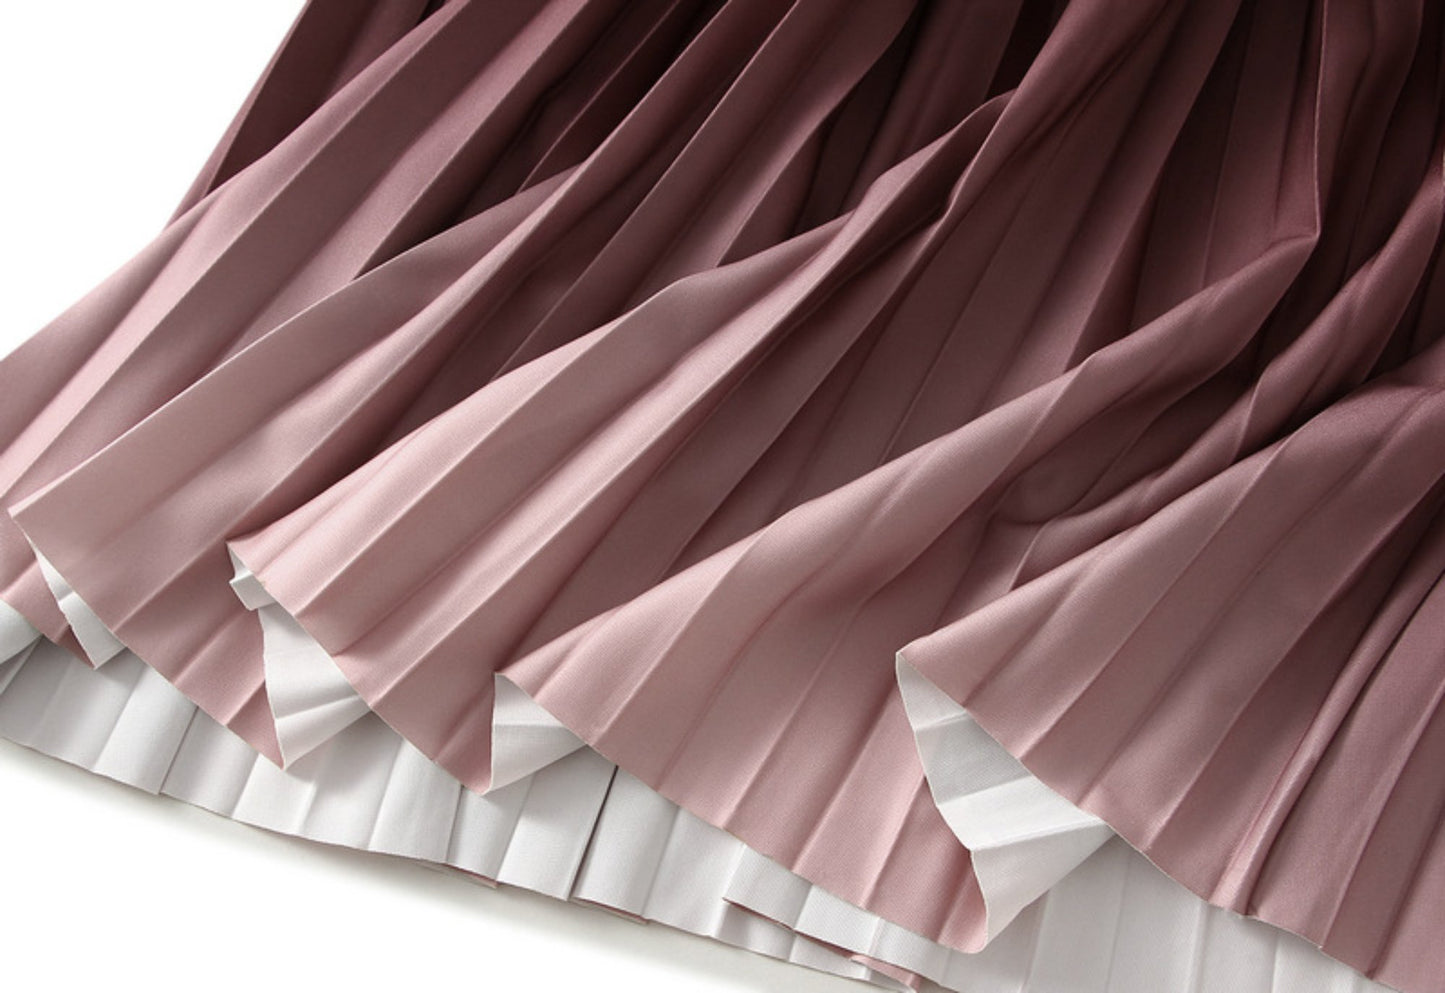 Gradient Pleated Skirt